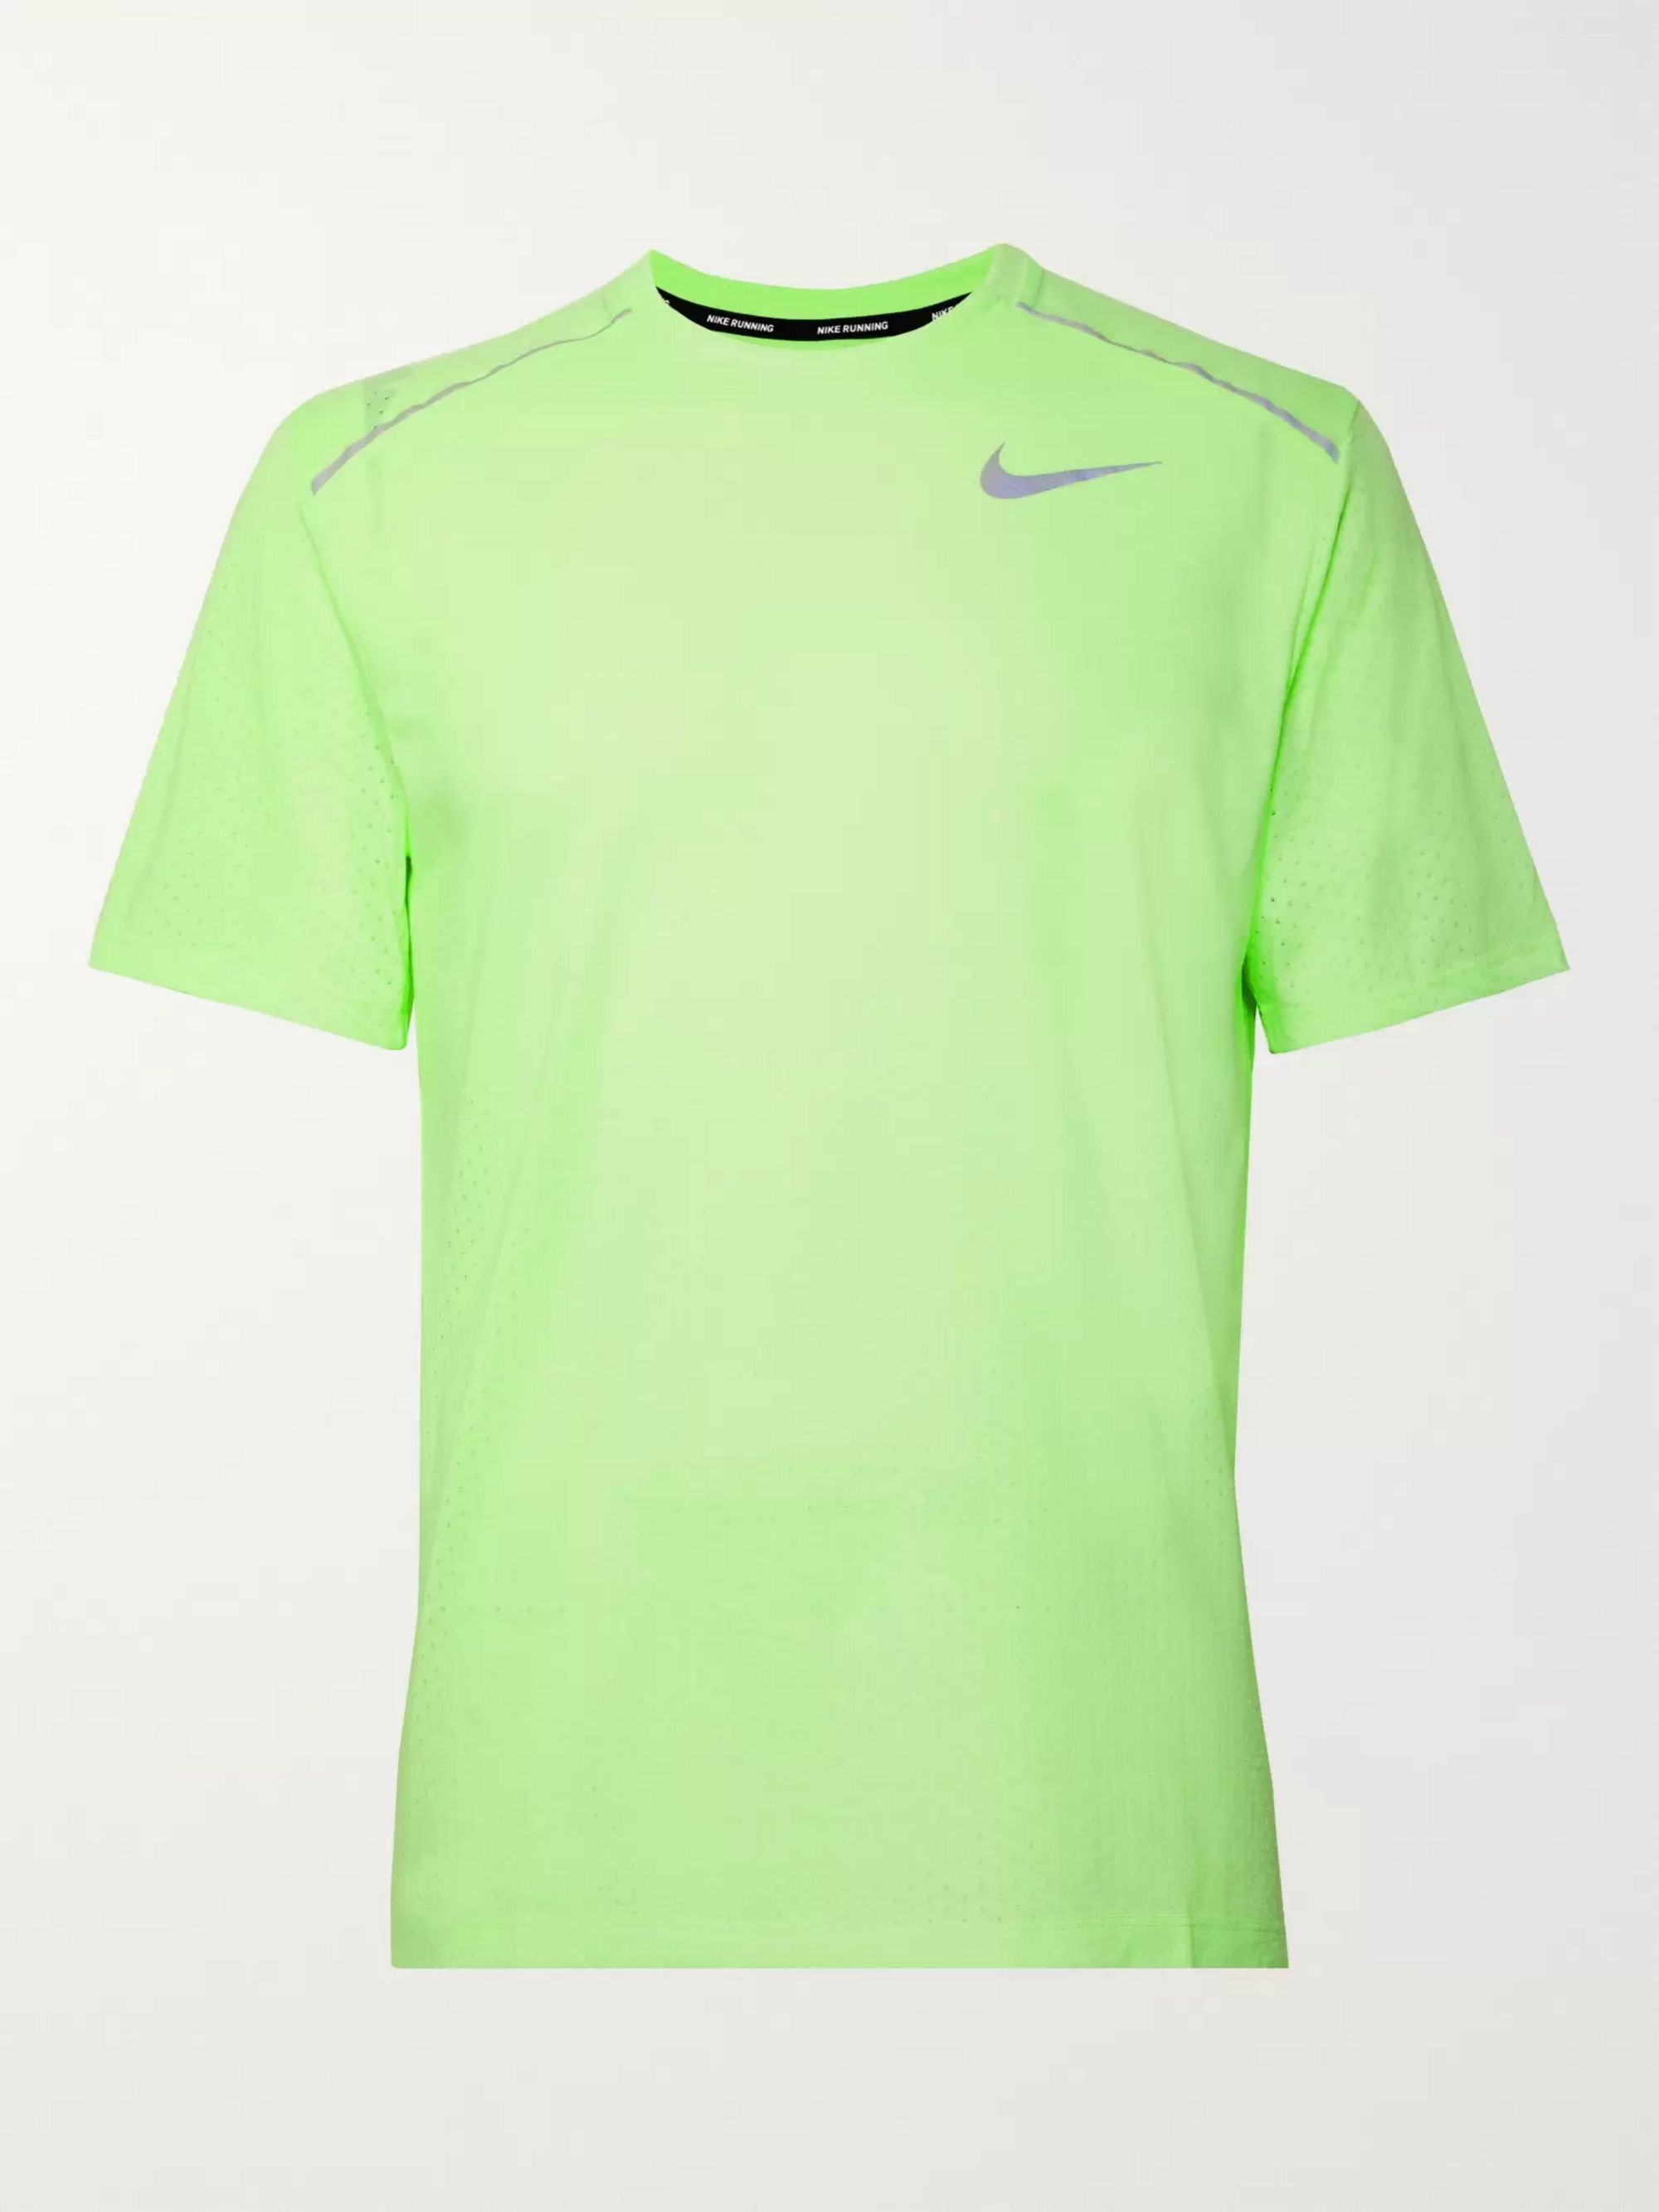 neon green nike shirt Online Shopping 